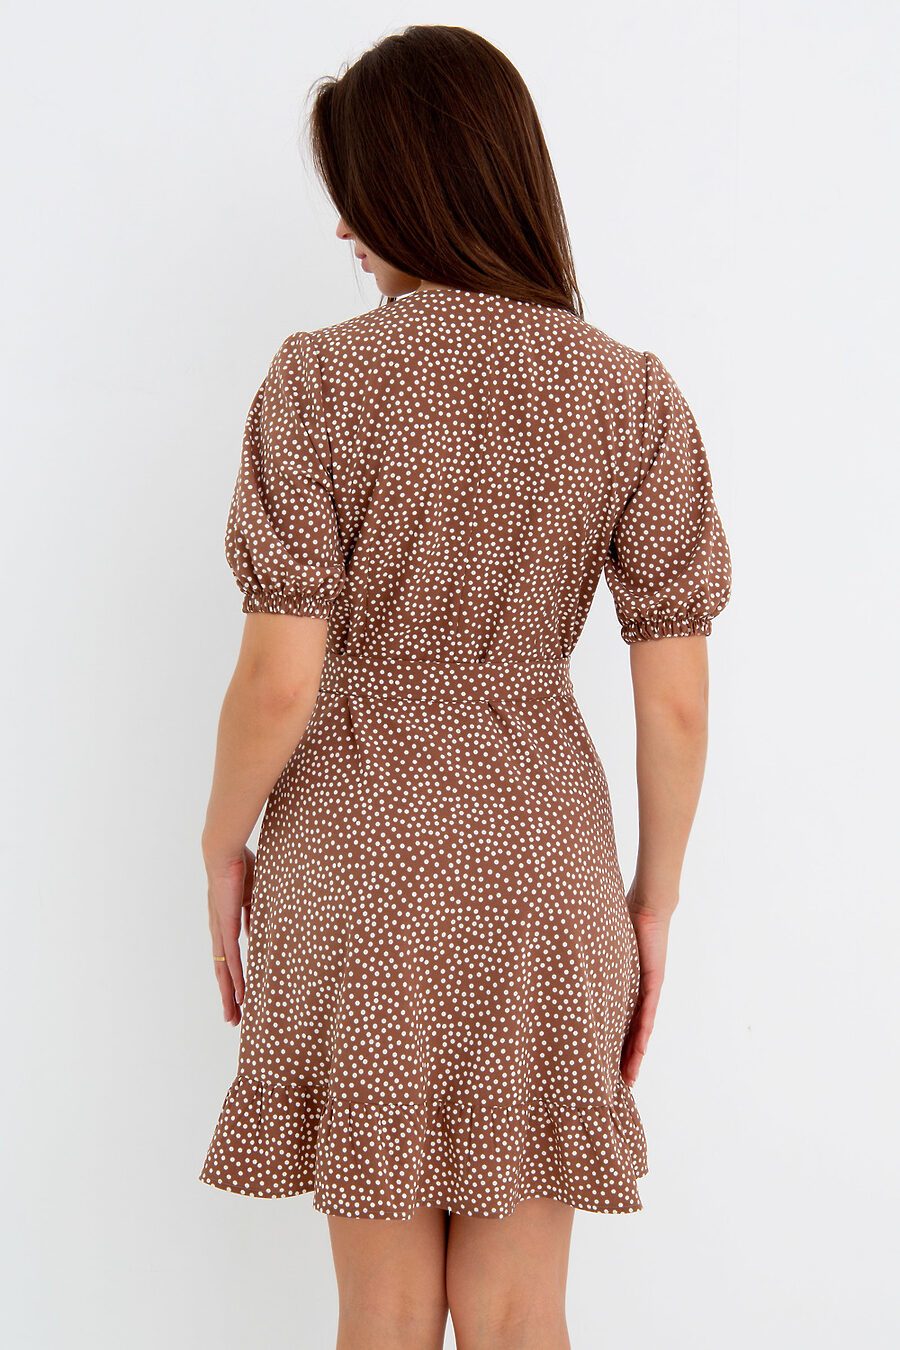 Платье П-20 для женщин НАТАЛИ 775898 купить оптом от производителя. Совместная покупка женской одежды в OptMoyo